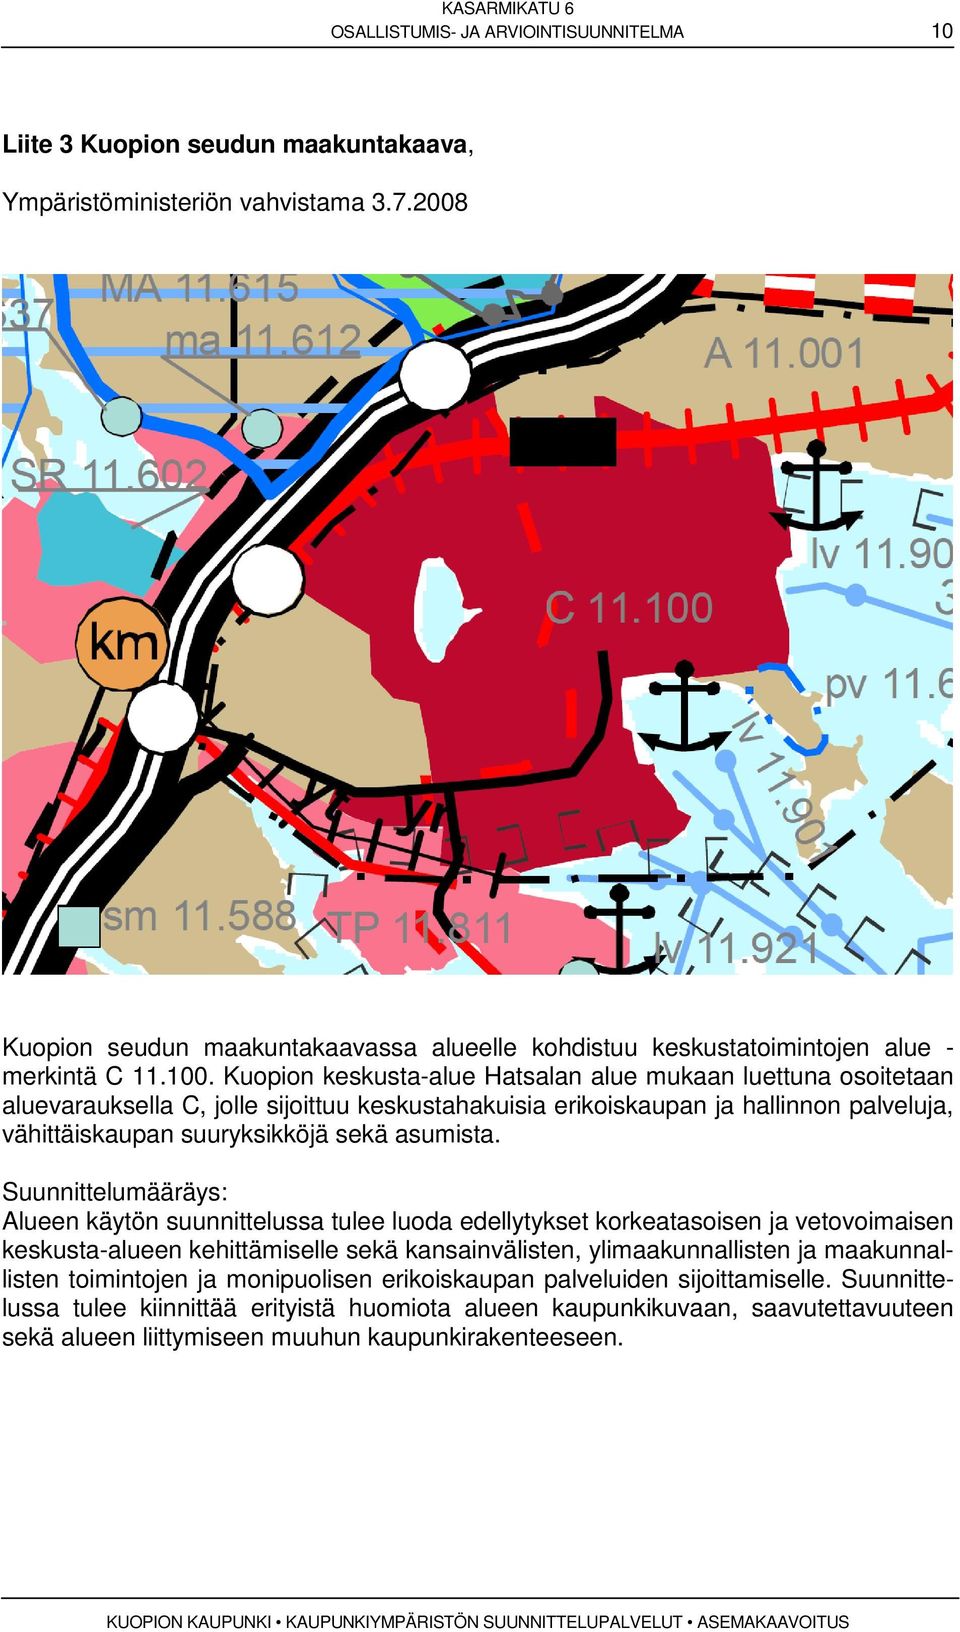 Kuopion keskusta-alue Hatsalan alue mukaan luettuna osoitetaan aluevarauksella C, jolle sijoittuu keskustahakuisia erikoiskaupan ja hallinnon palveluja, vähittäiskaupan suuryksikköjä sekä asumista.